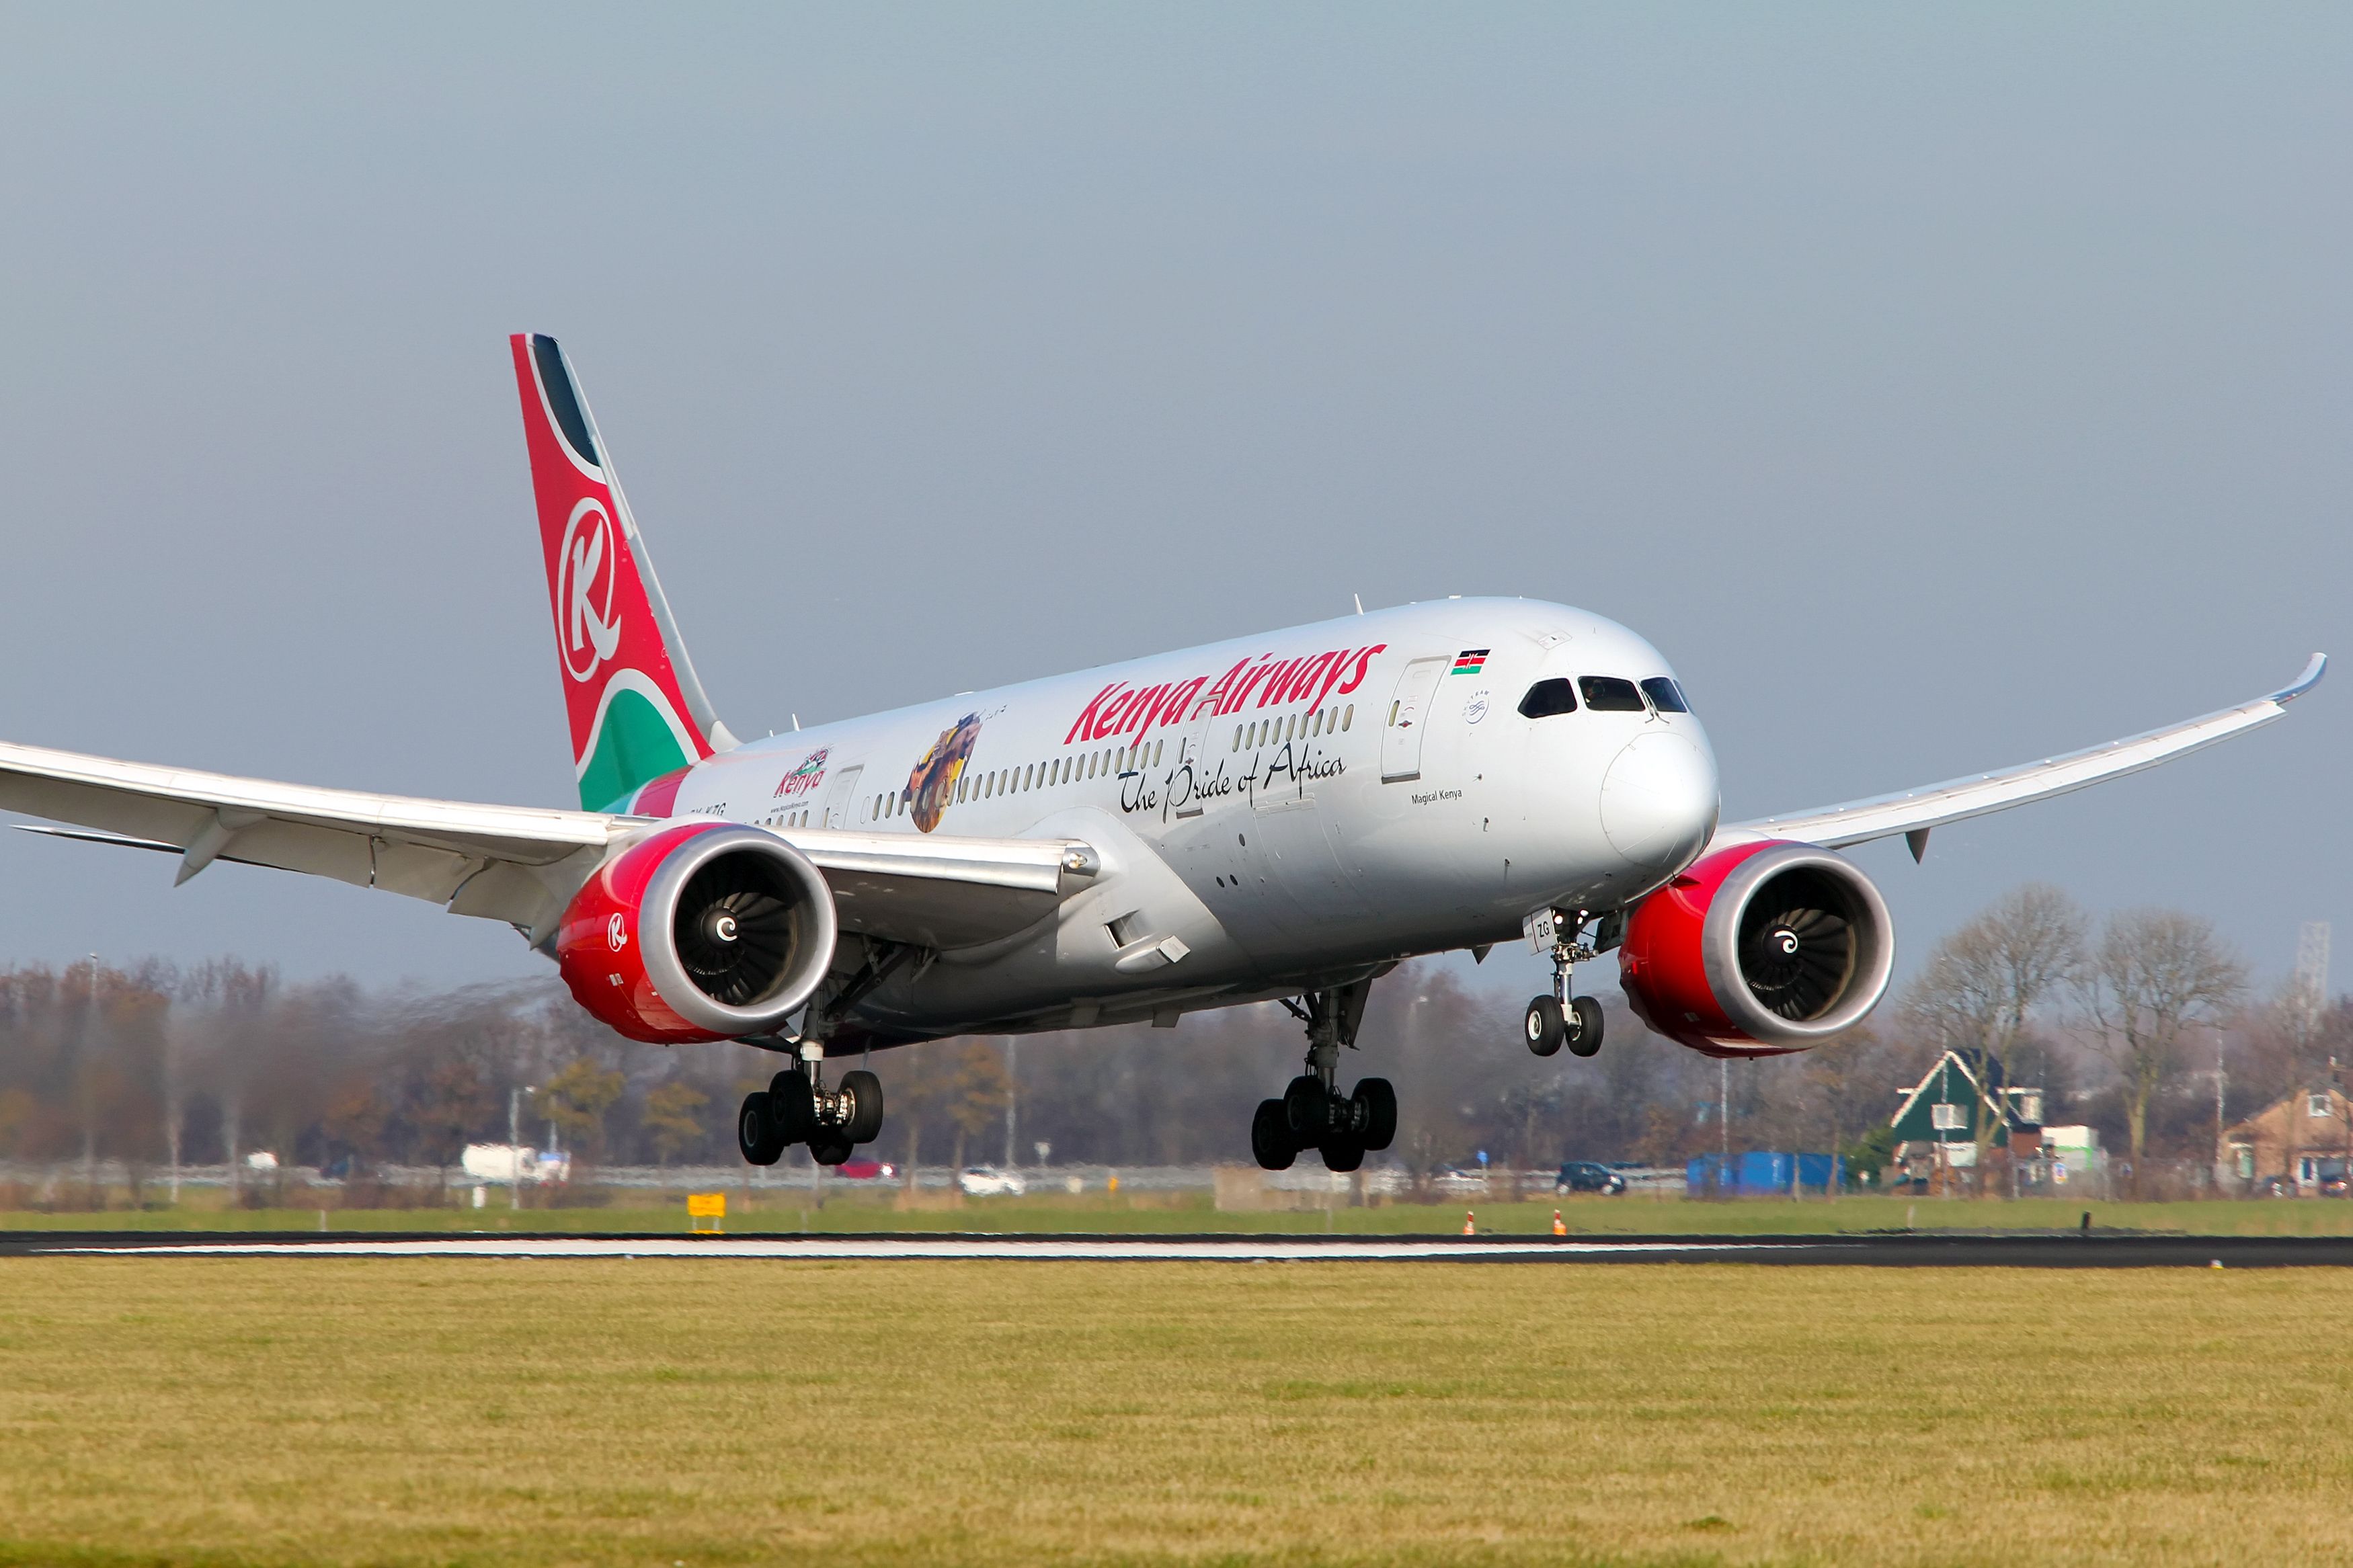 Kenya Airways aircraft taking off.